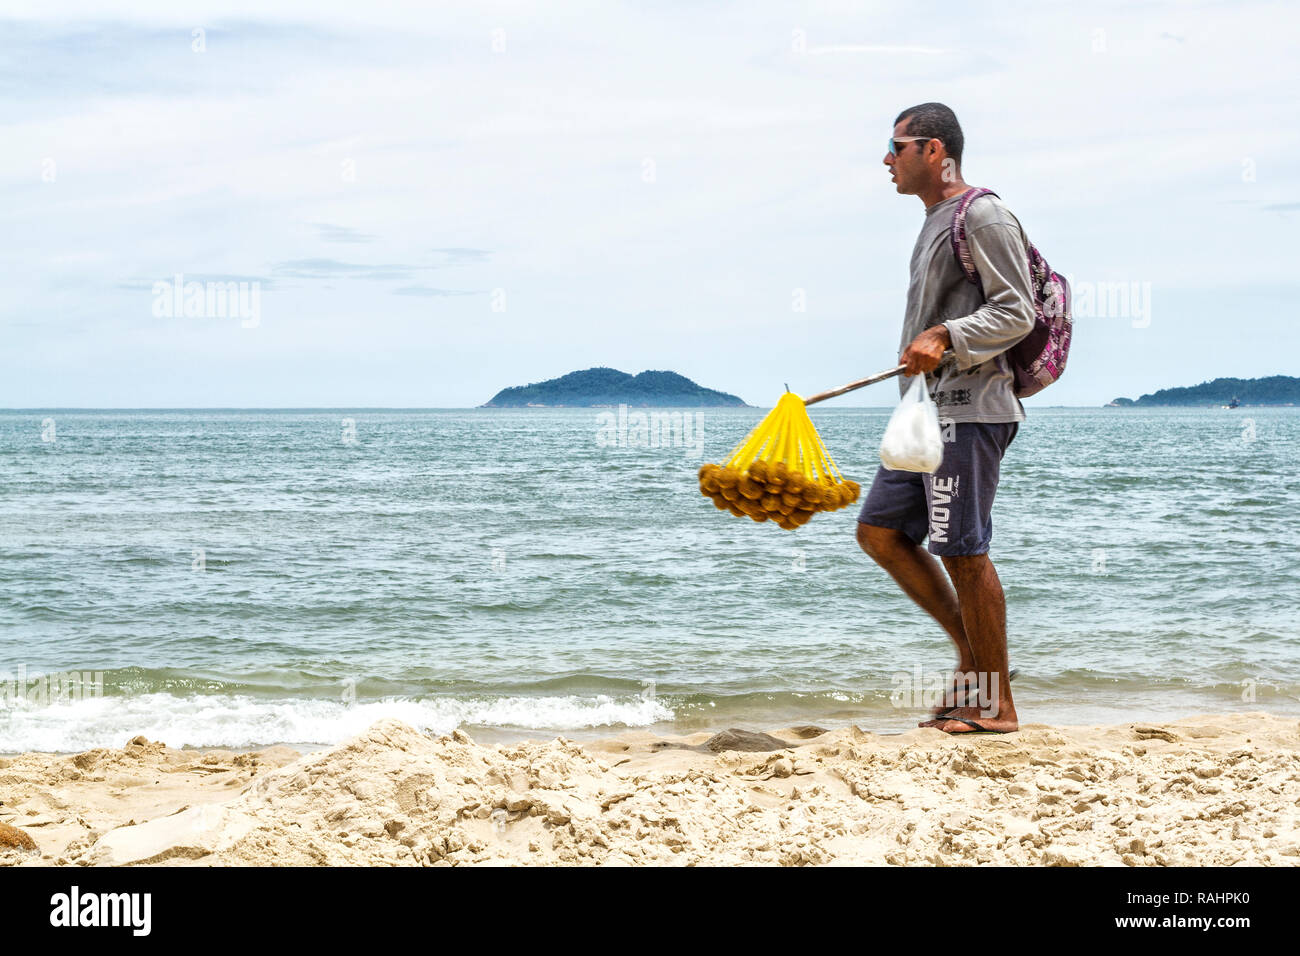 Strandverkäufer, die am Acores Beach spazieren gehen. Florianopolis, Santa Catarina, Brasilien. Stockfoto